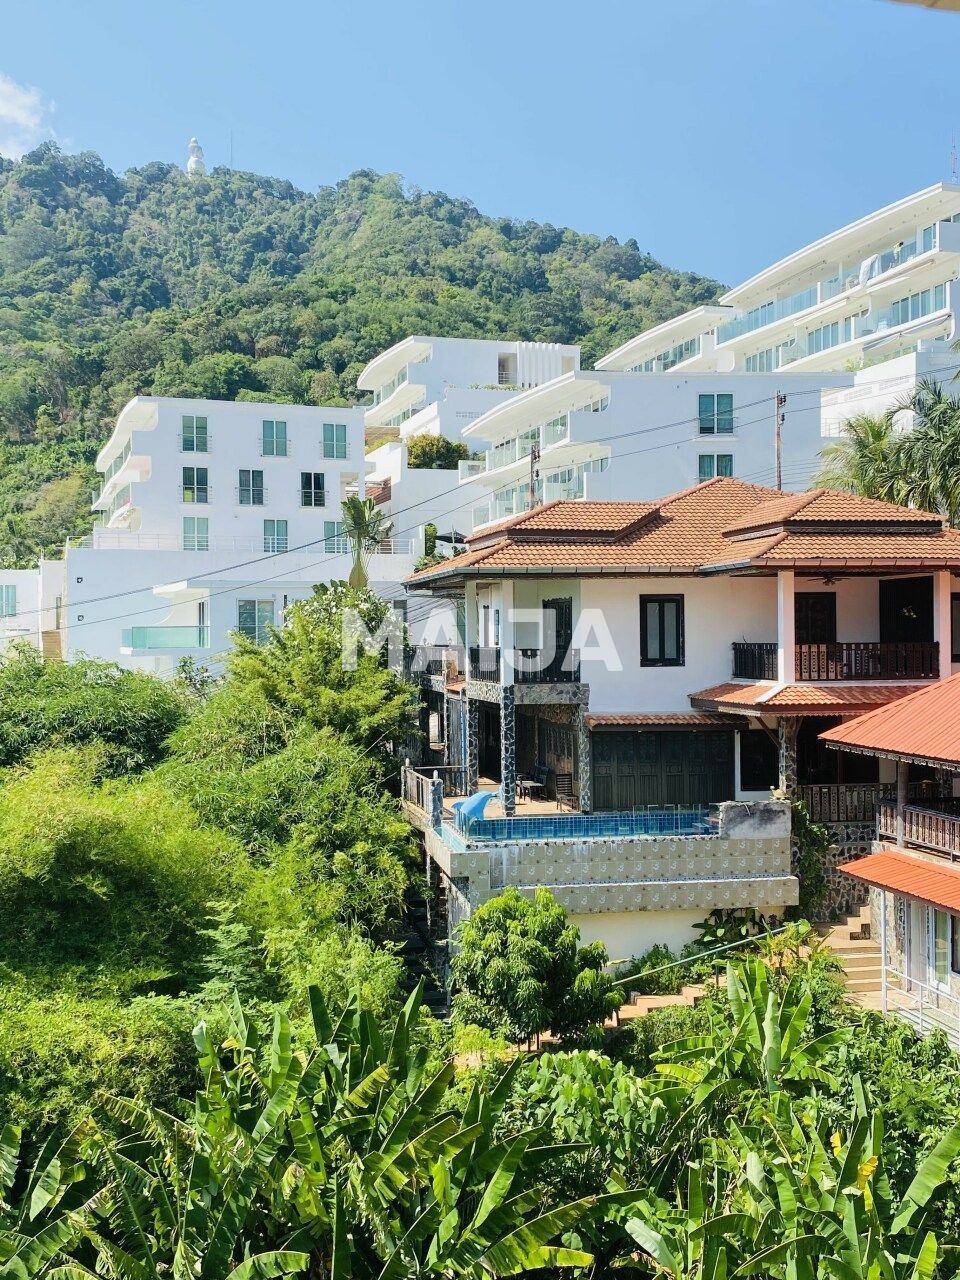 Apartment in Insel Phuket, Thailand, 89.3 m2 - Foto 1